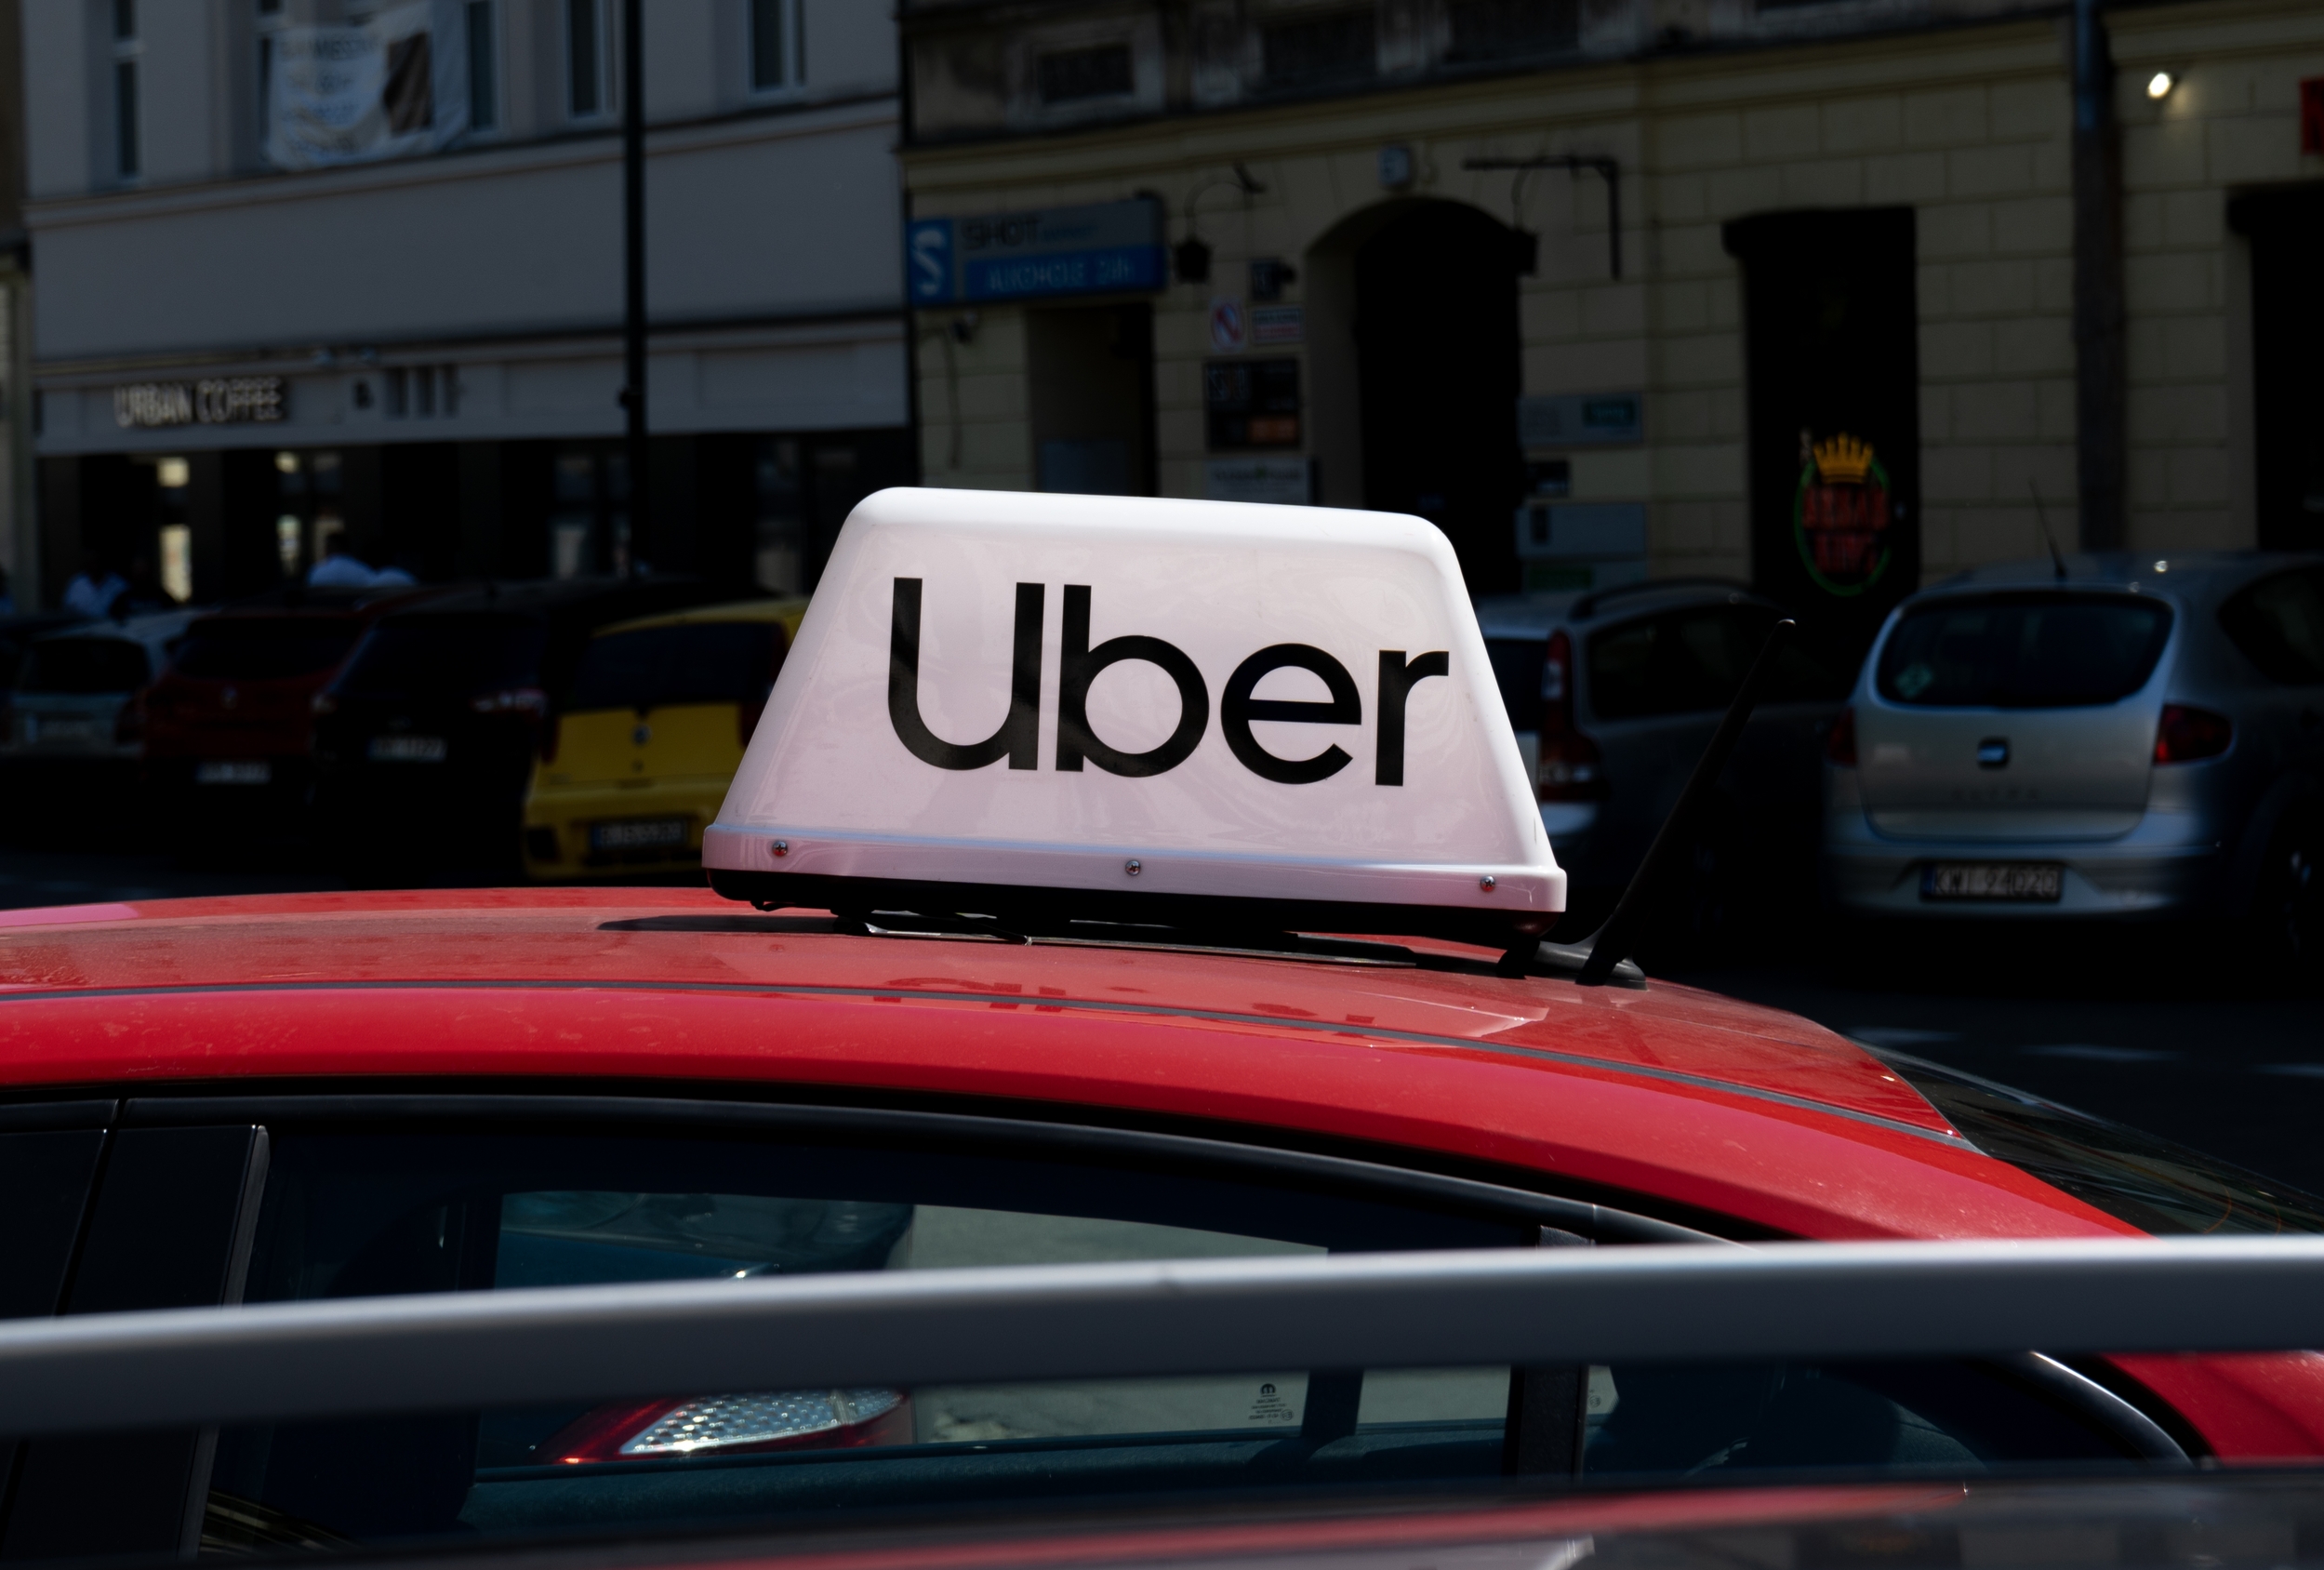 Chauffeurs Uber écartés : la plateforme dévoile ses nouvelles règles, pour une meilleure transparence